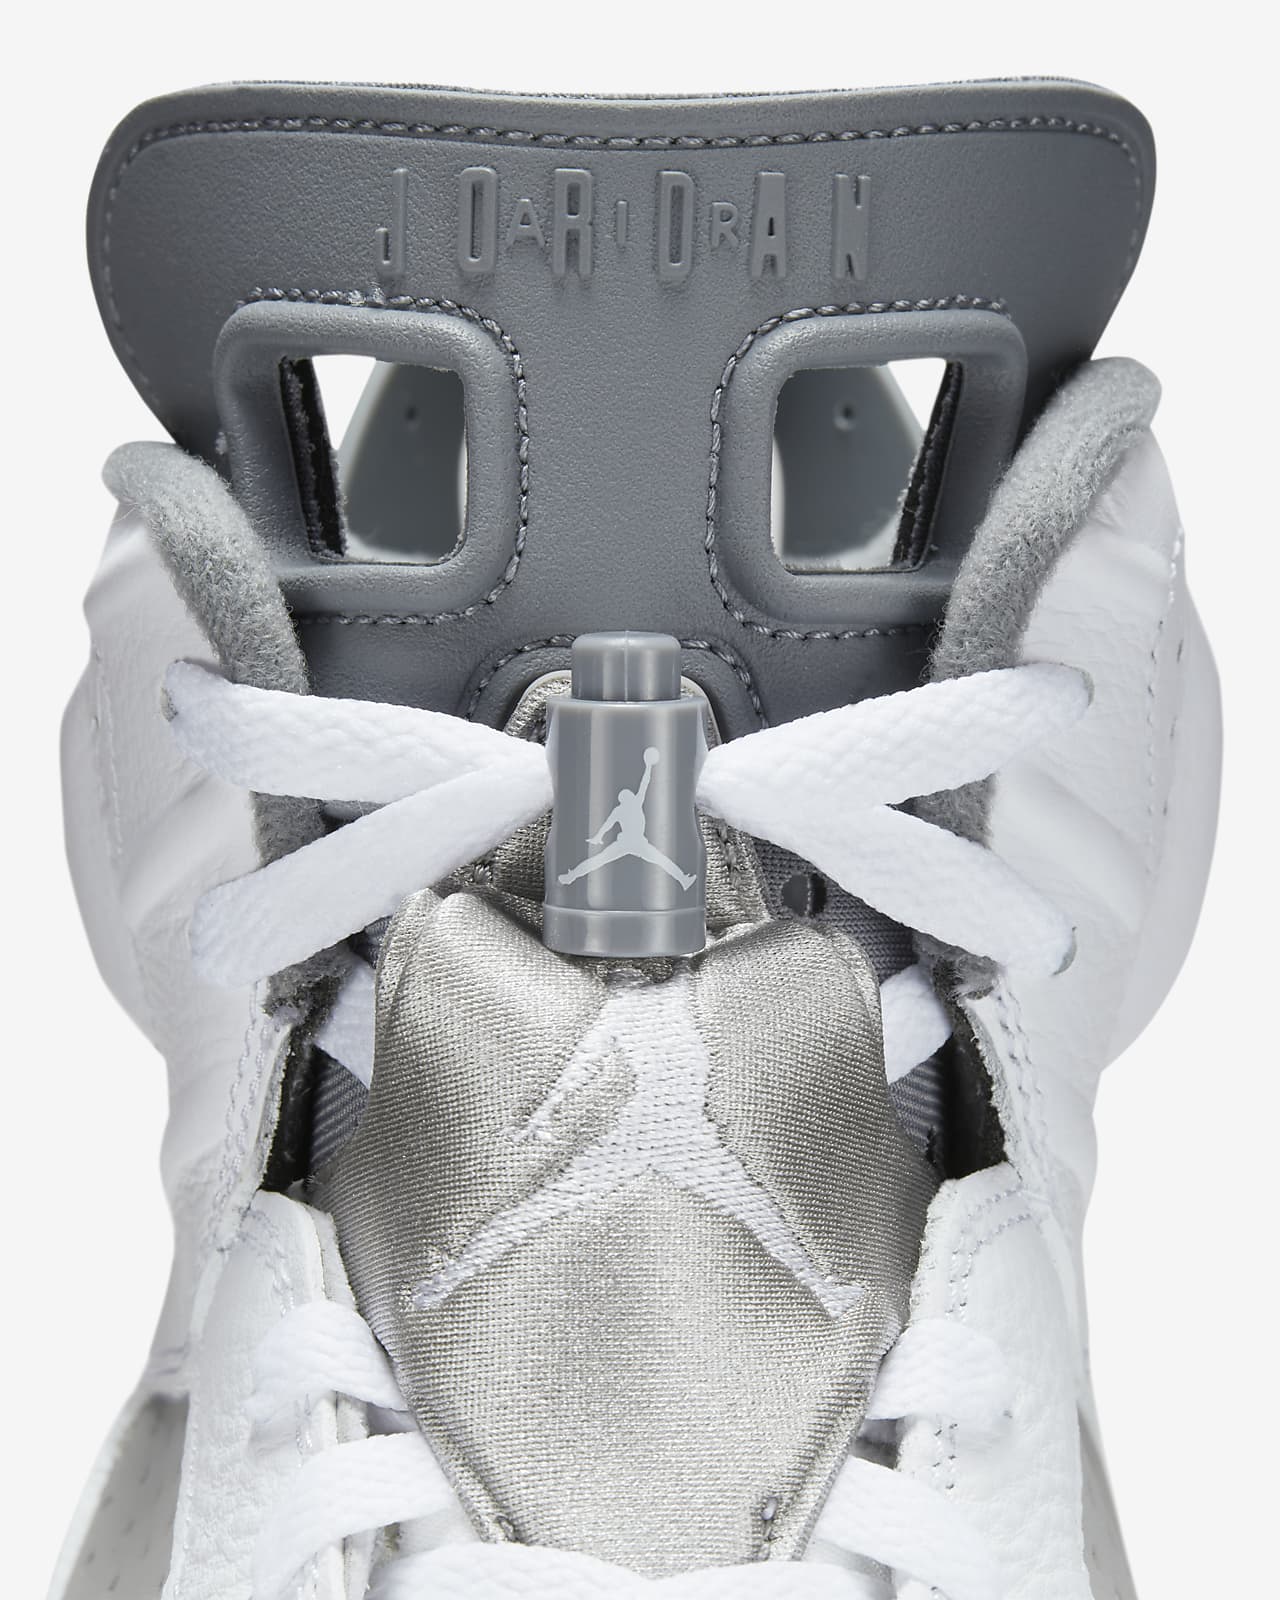 Air Jordan 6 Retro Nike.com